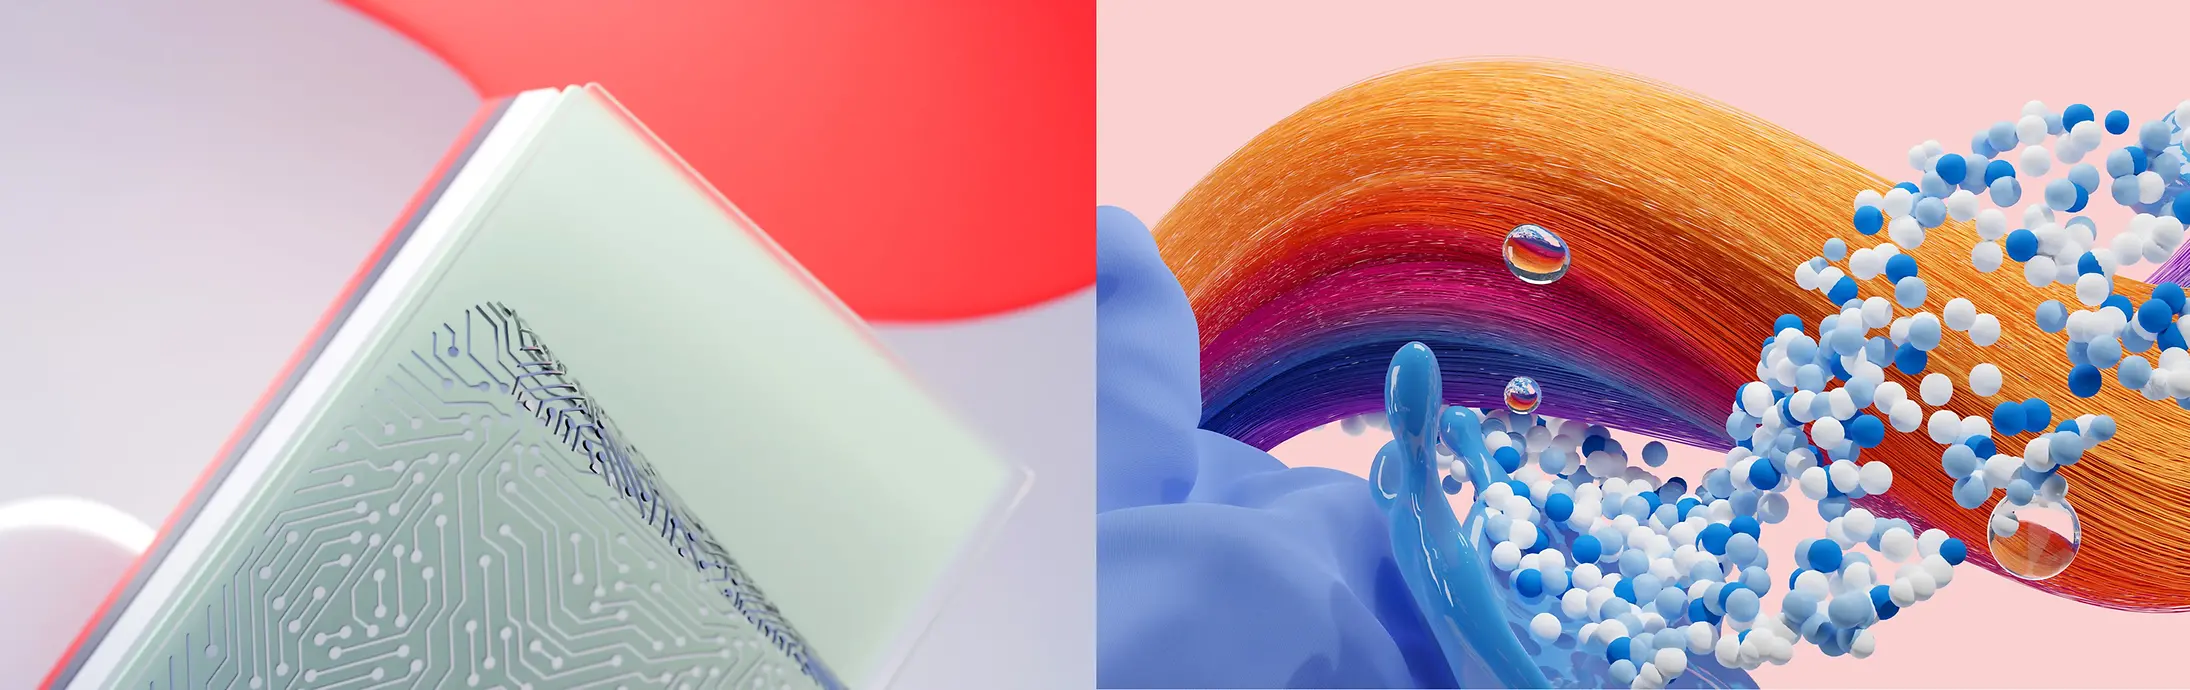 Abstrakt billede, der repræsenterer Henkel-virksomhederne Adhesive Technologies + Consumer Brands (Hair og Laundry & Home Care).